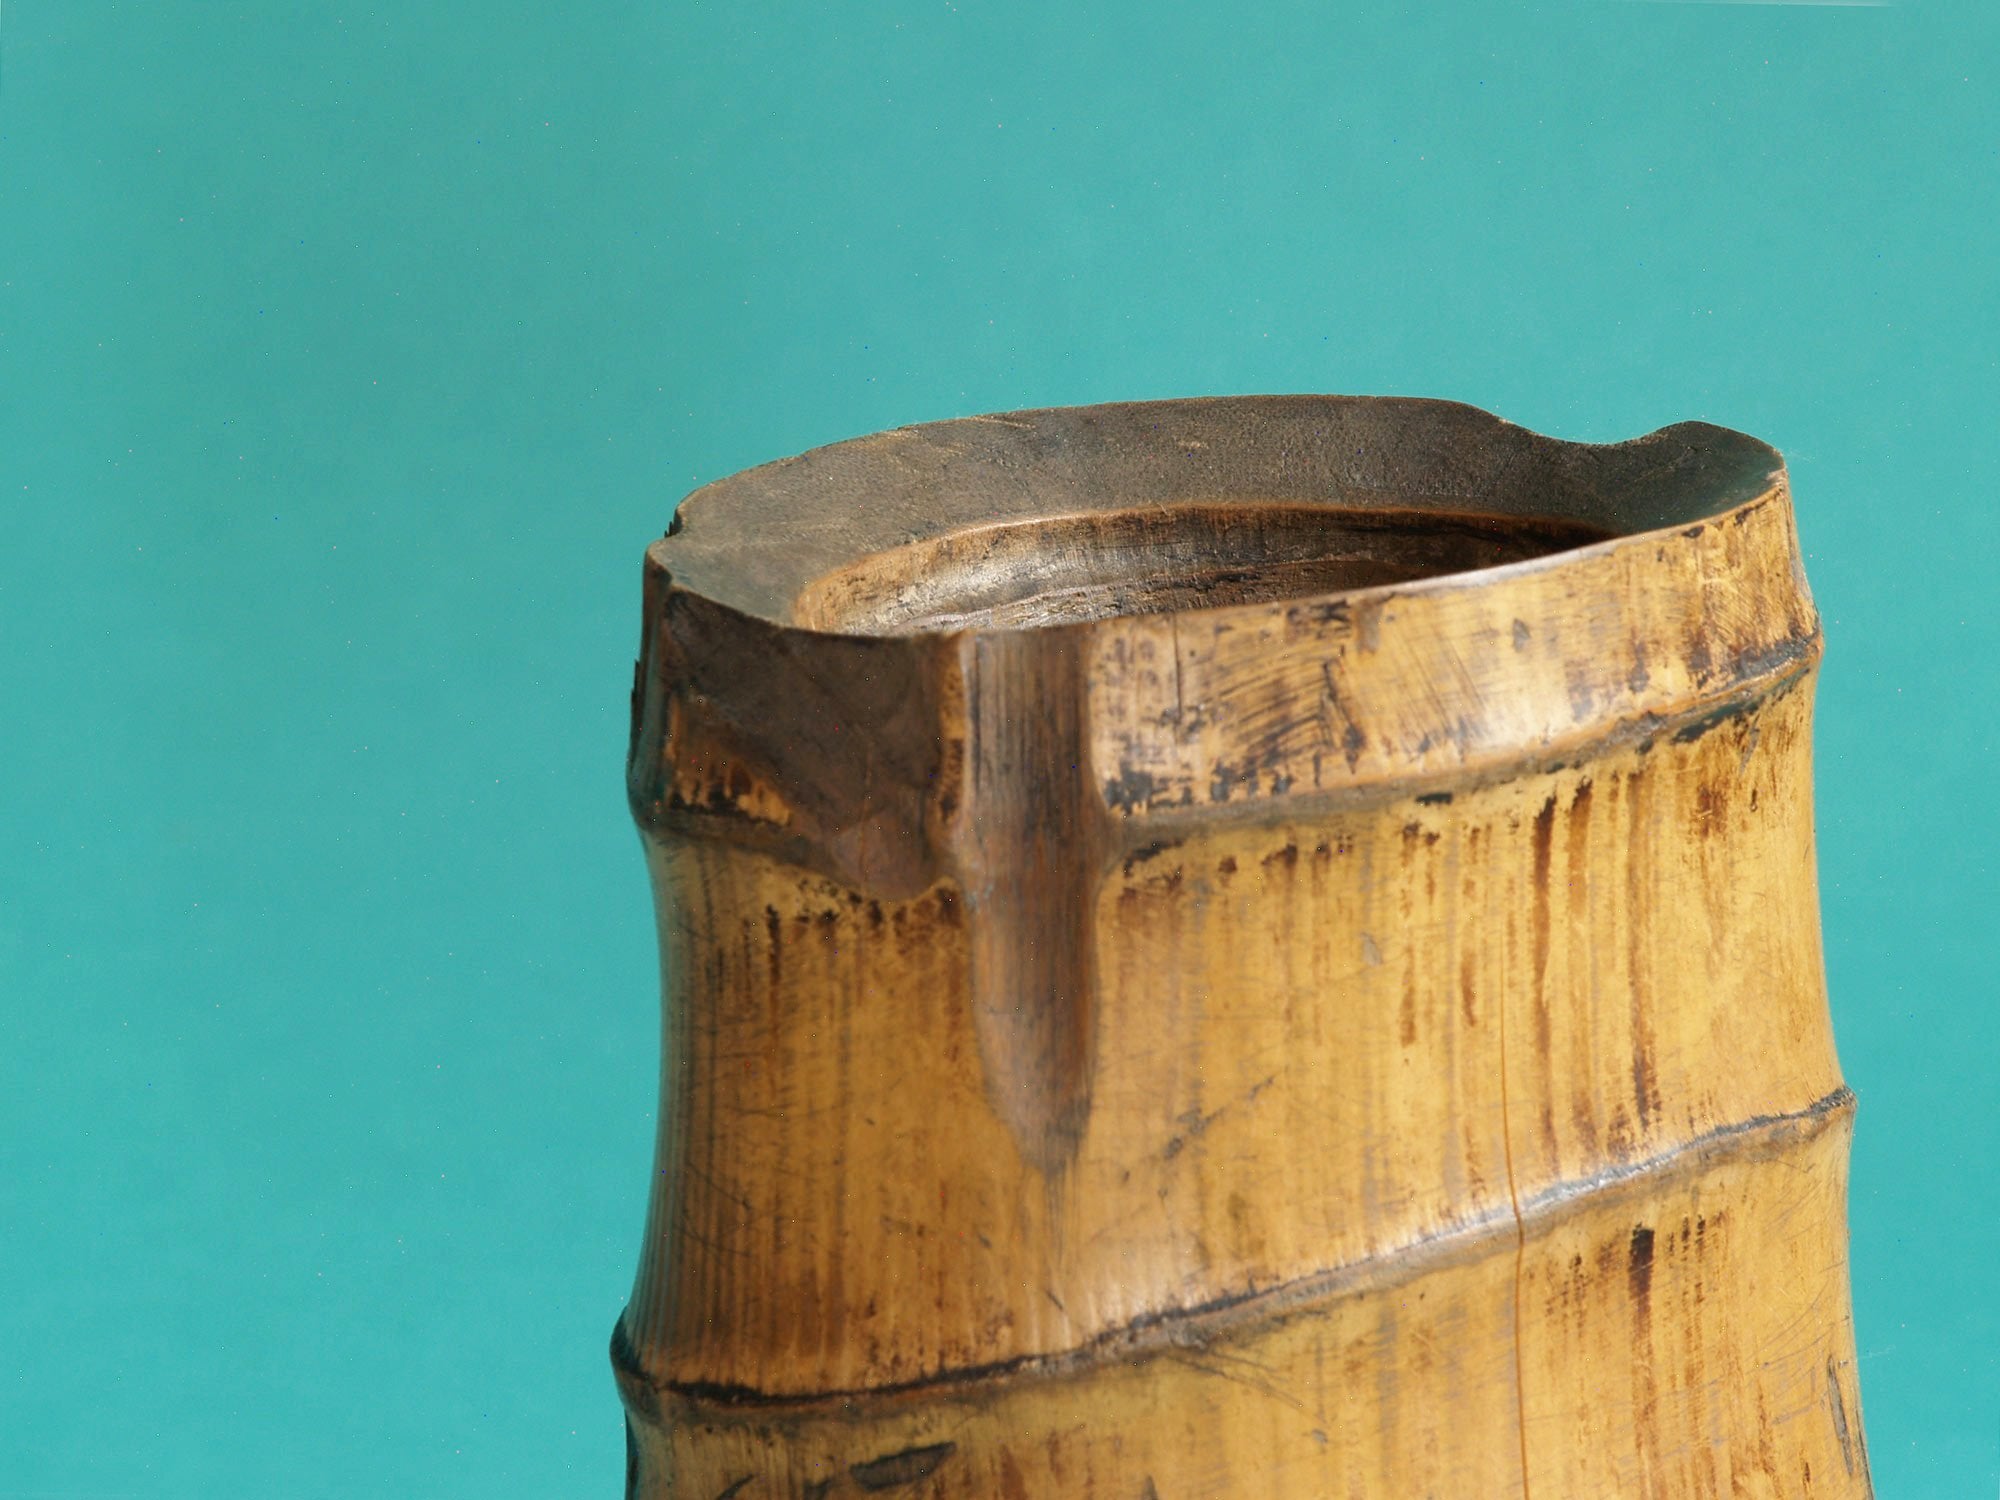 Take-zutsu hanaire, Rare vase en bambou pour la cérémonie du thé à la manière de Rikyū, Japon (Période Edo)..Take-zutsu Hanaire Bamboo vase for tea ceremony chabana in the manner of Rikyū, Japan (Edo period)